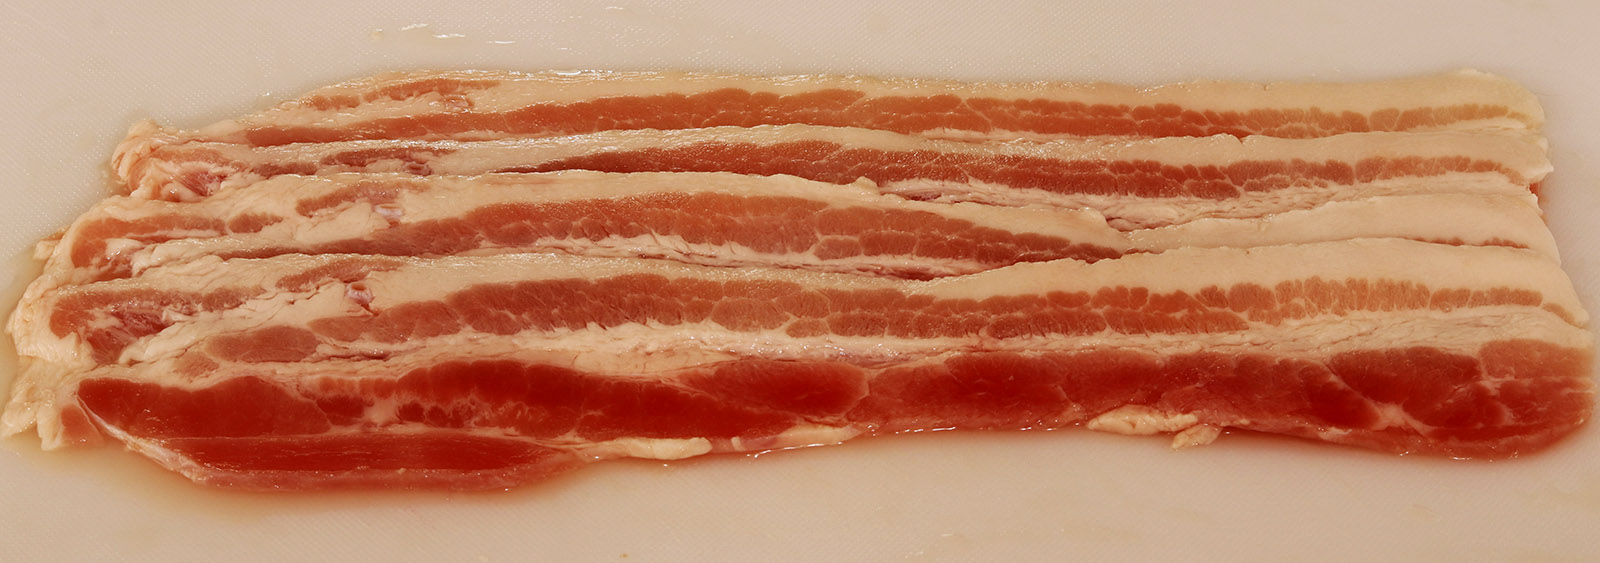 Raw bacon s.jpg